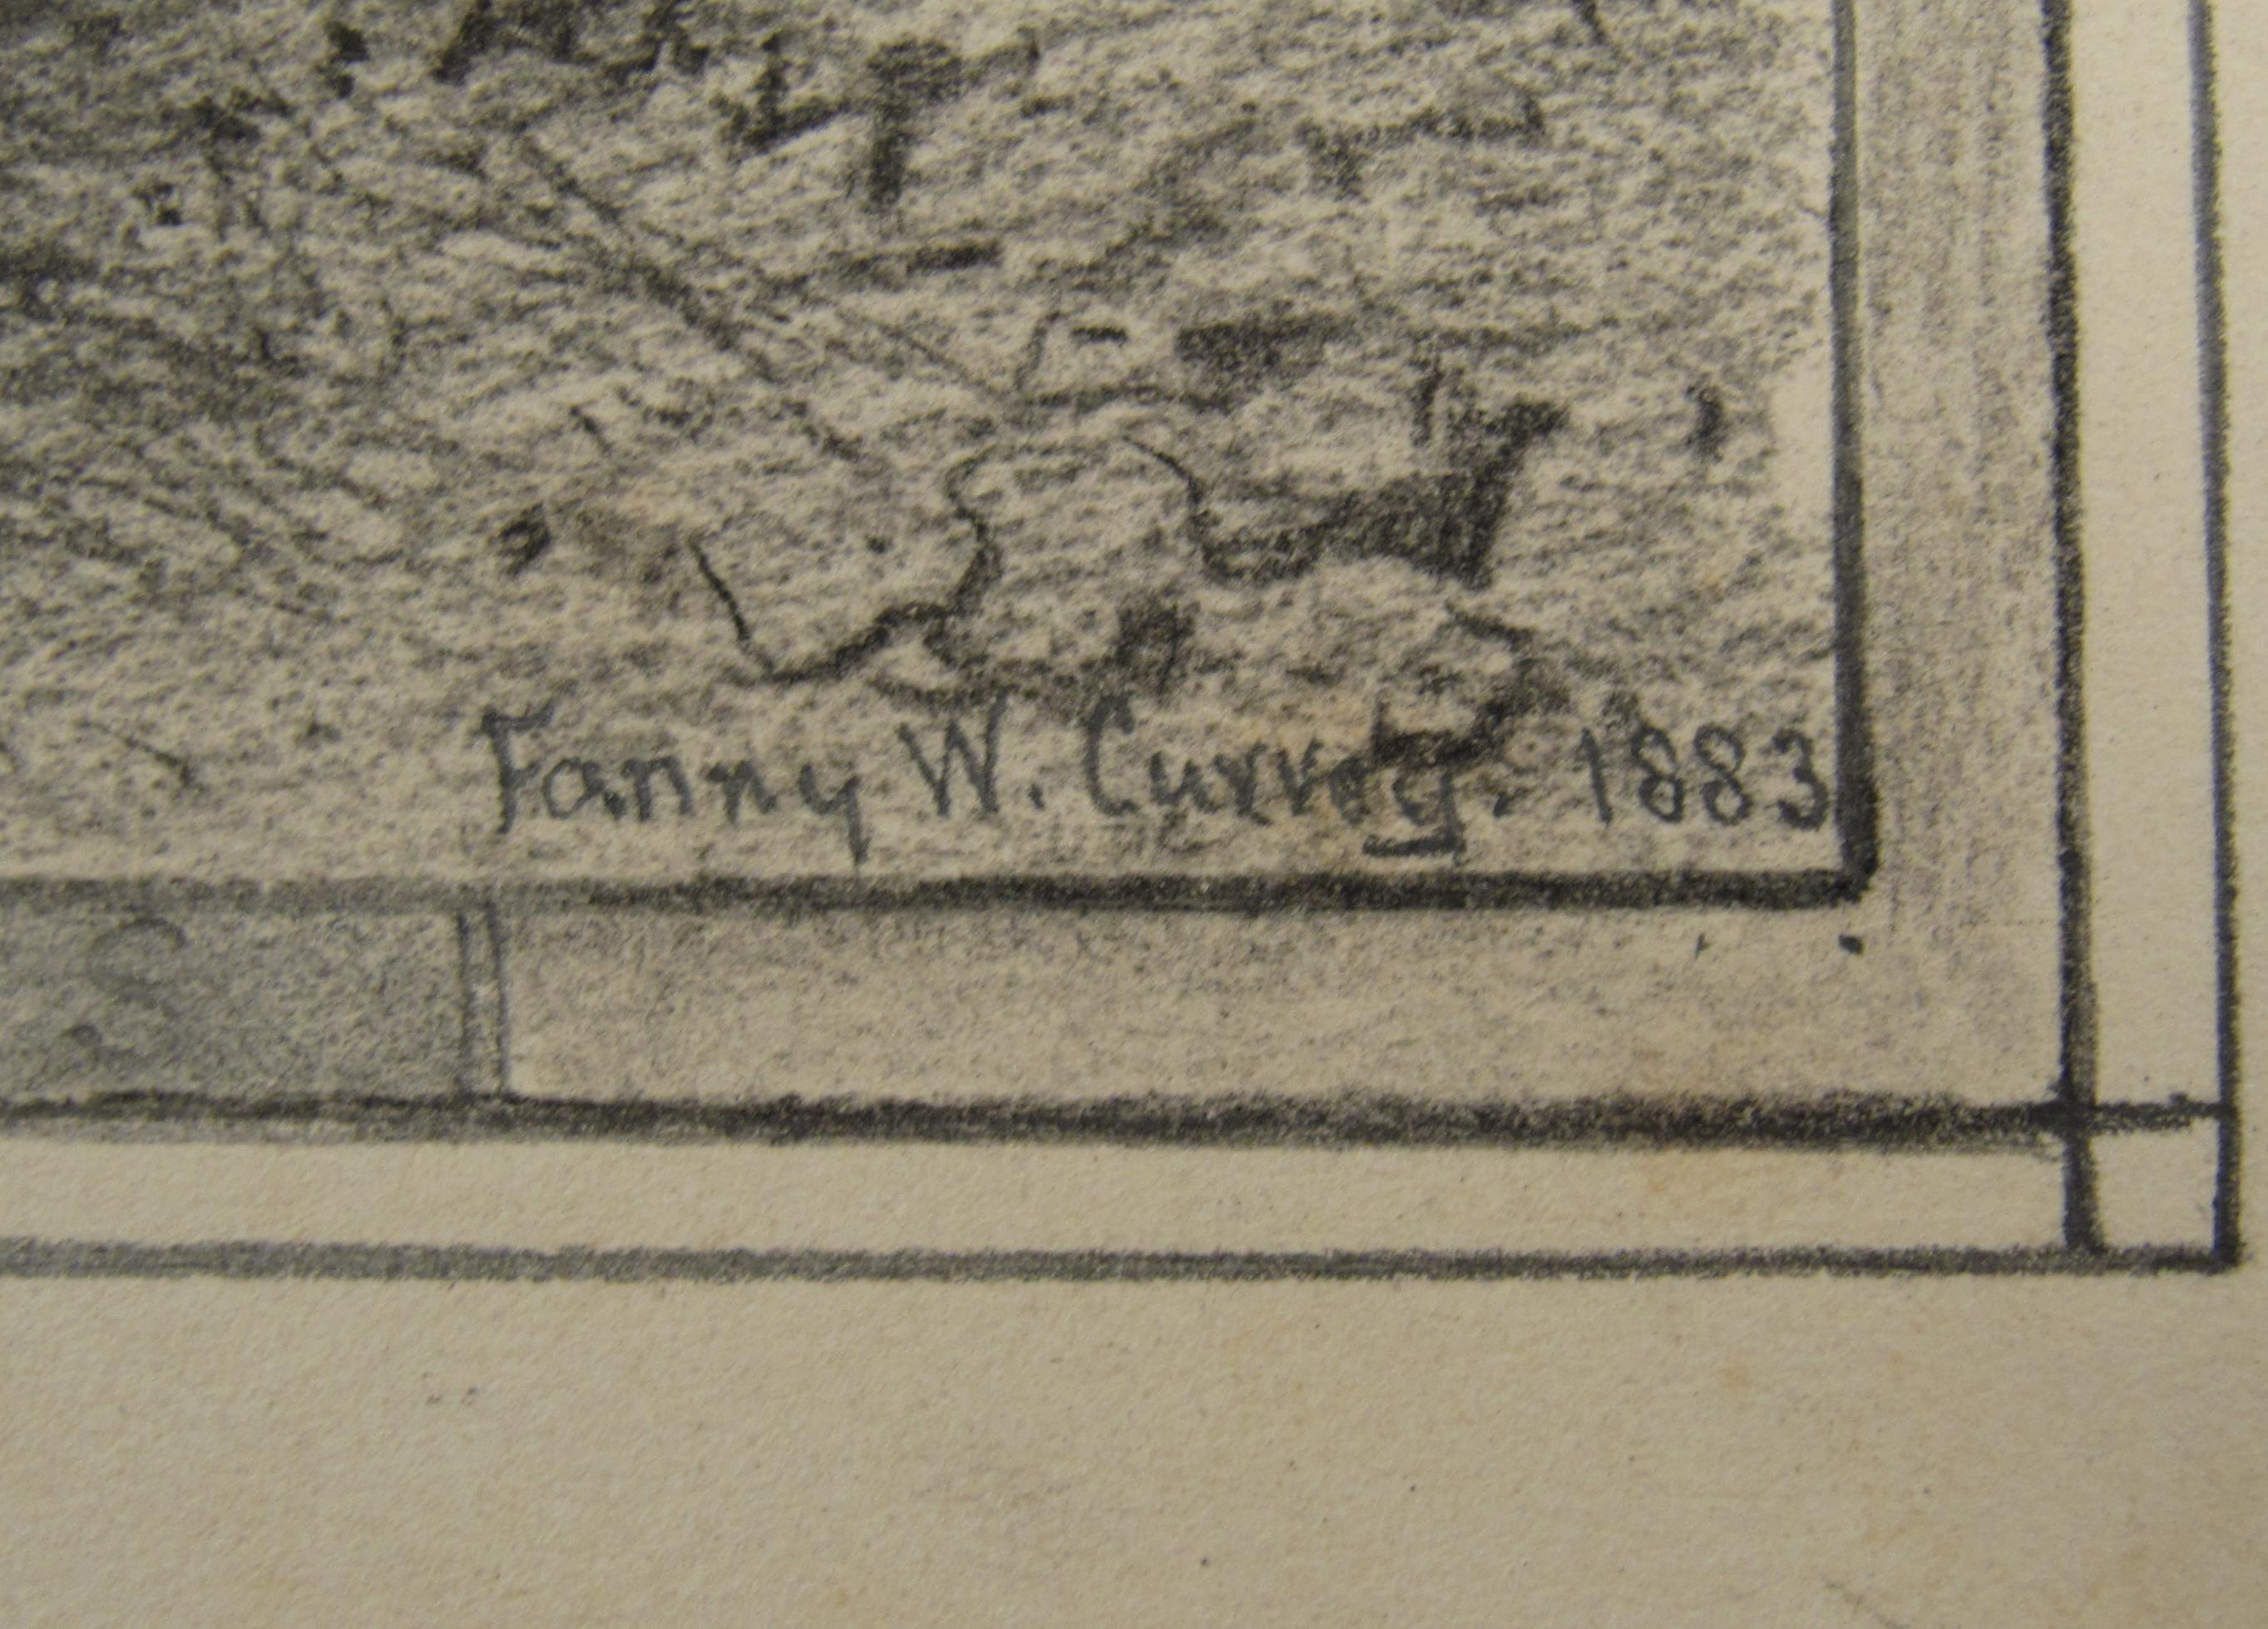 Fanny Wimot Currey
(Irisch, 1848 - 1917)

Via Crucis Via Lucis

- •	Bleistift auf Papier ca. 31 x 25 cm
- •	Signiert & datiert unten rechts 1883
- •	Das Blatt misst ca. 31,2 x 23,2 cm
- •	Das Bild einschließlich des gezeichneten Rahmens misst ca.